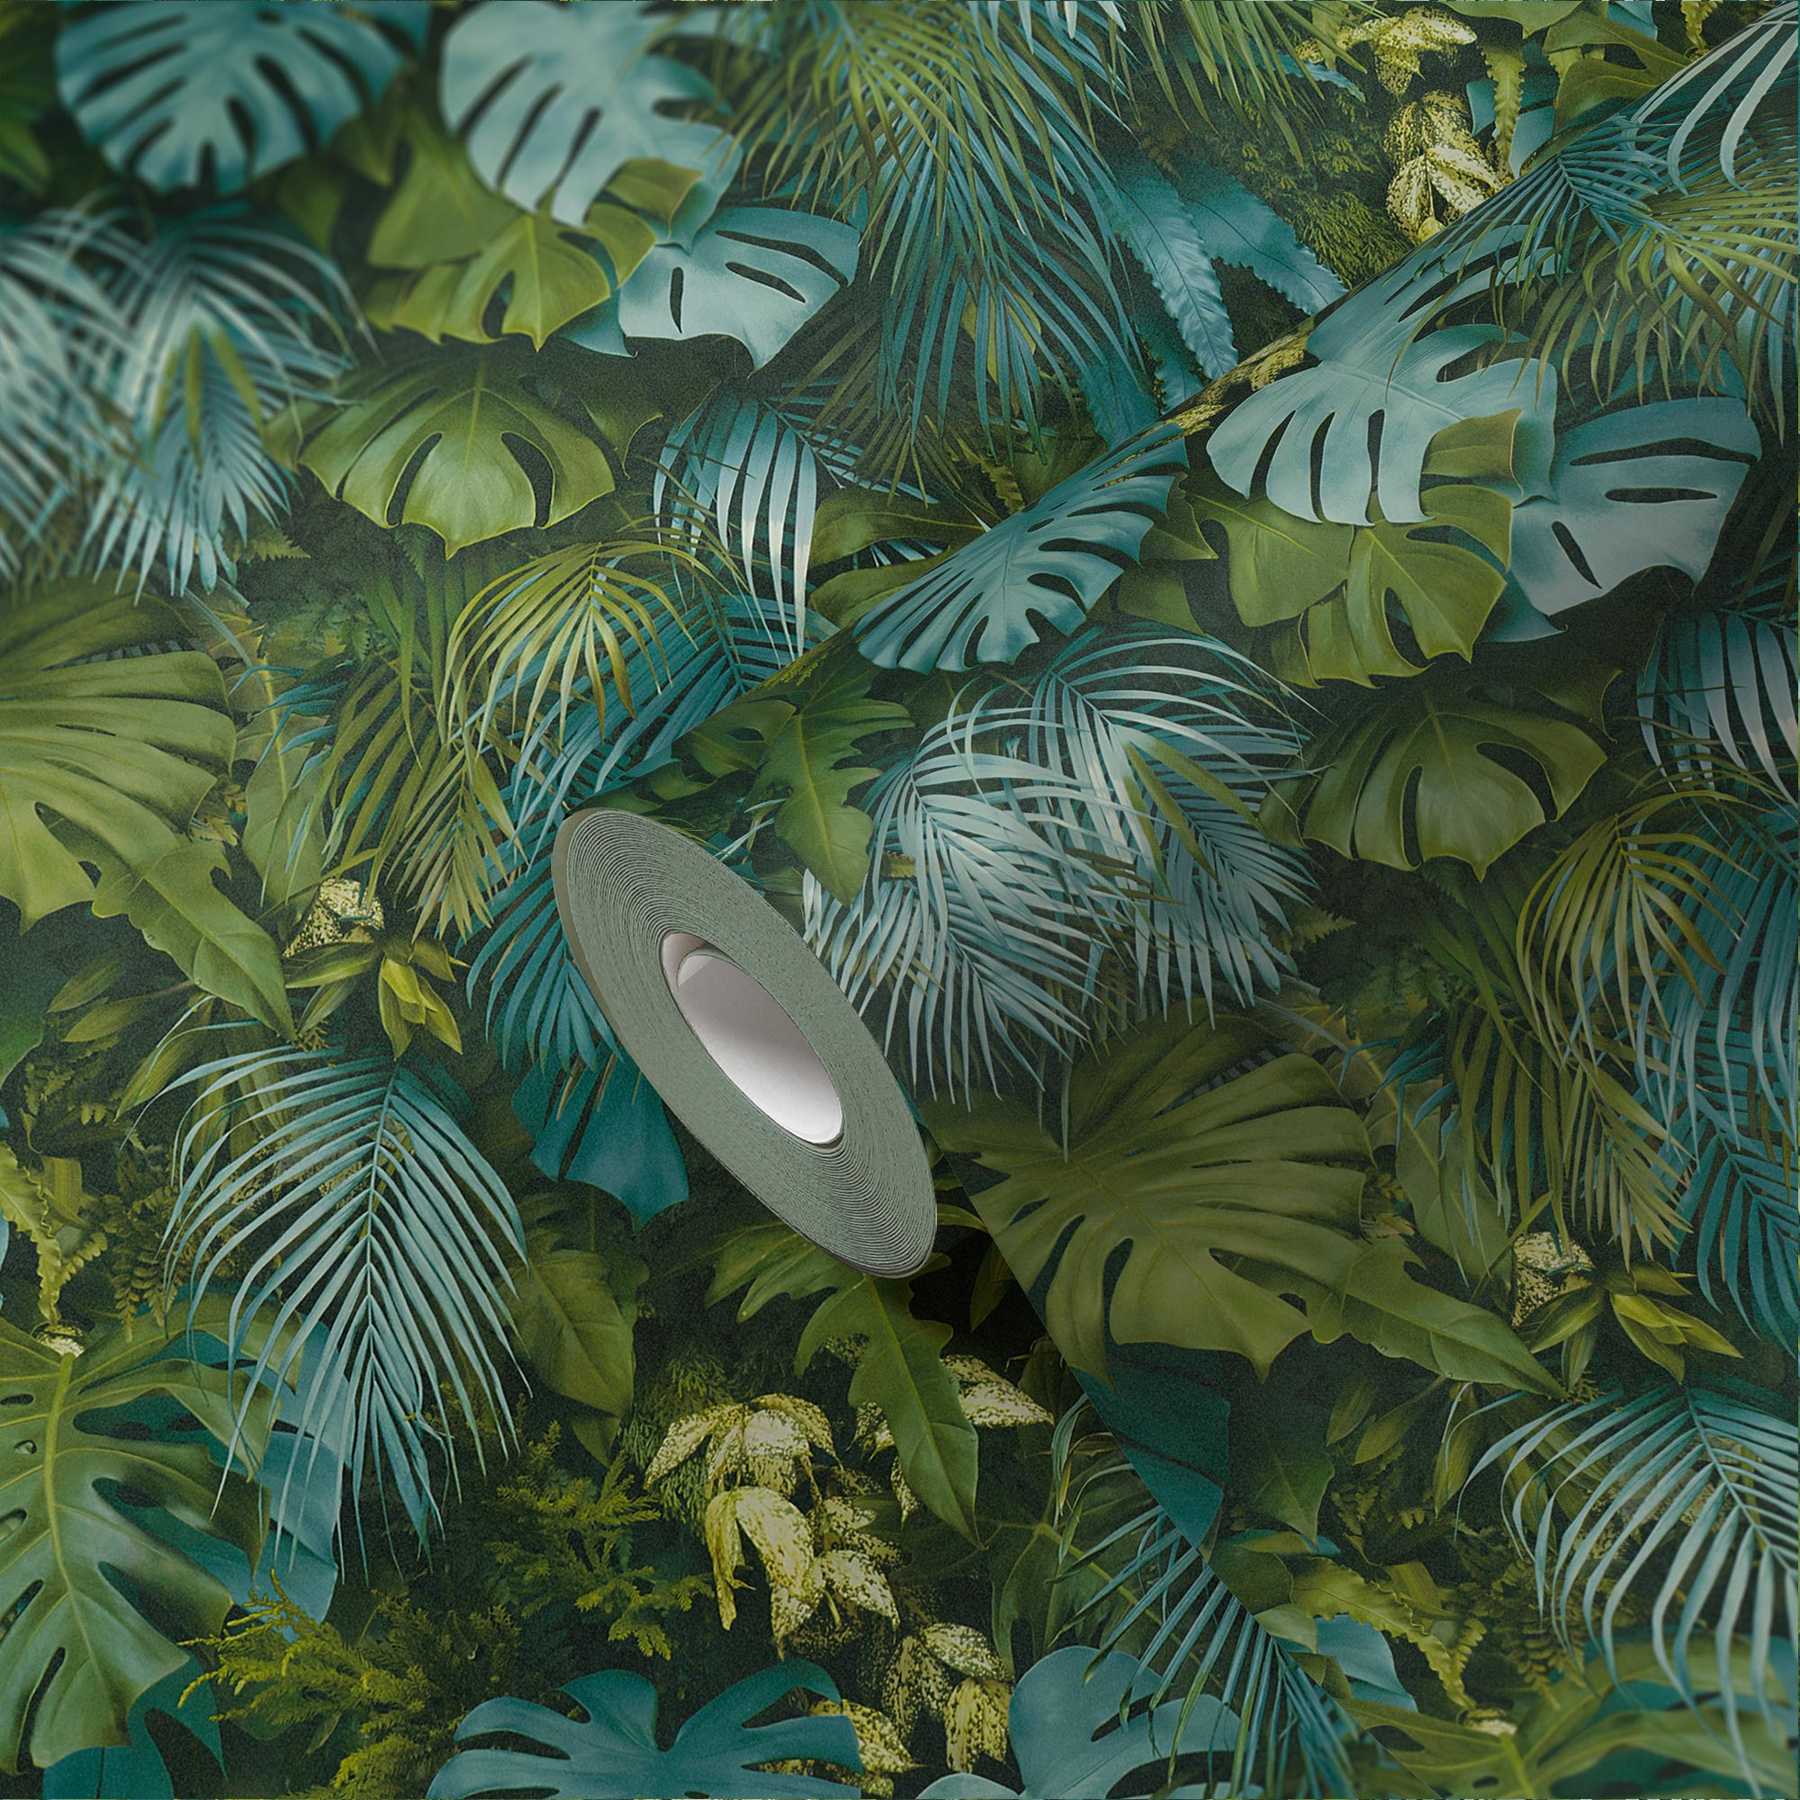             Papel pintado Bosque de hojas verdes, realista, acentos de color - verde, azul
        